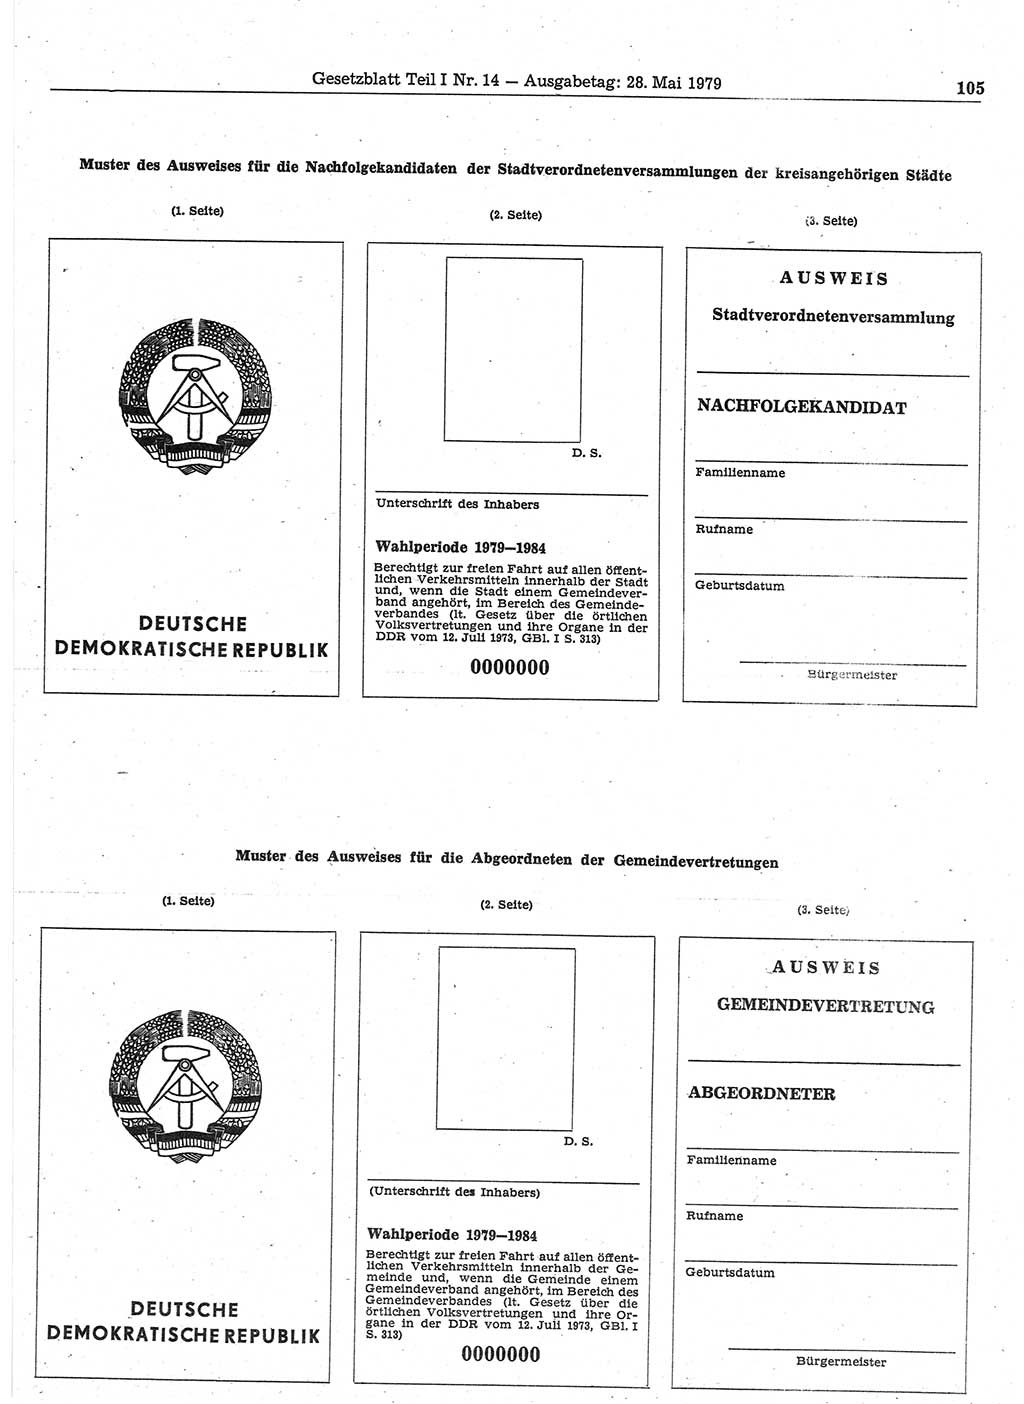 Gesetzblatt (GBl.) der Deutschen Demokratischen Republik (DDR) Teil Ⅰ 1979, Seite 105 (GBl. DDR Ⅰ 1979, S. 105)